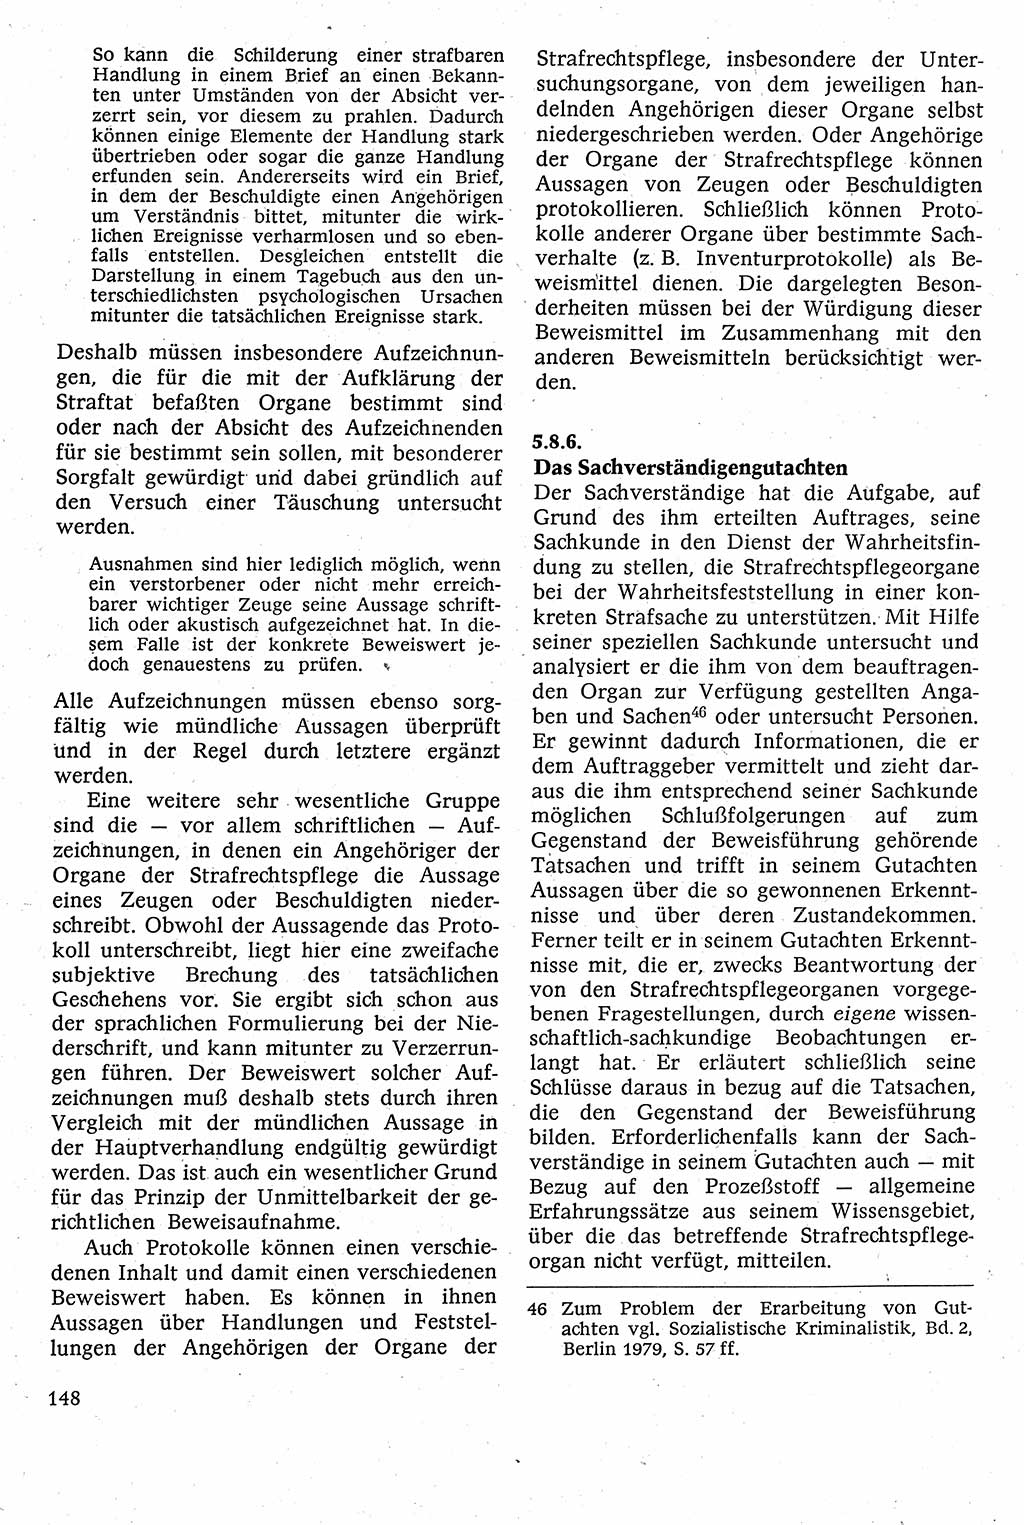 Strafverfahrensrecht [Deutsche Demokratische Republik (DDR)], Lehrbuch 1982, Seite 148 (Strafverf.-R. DDR Lb. 1982, S. 148)